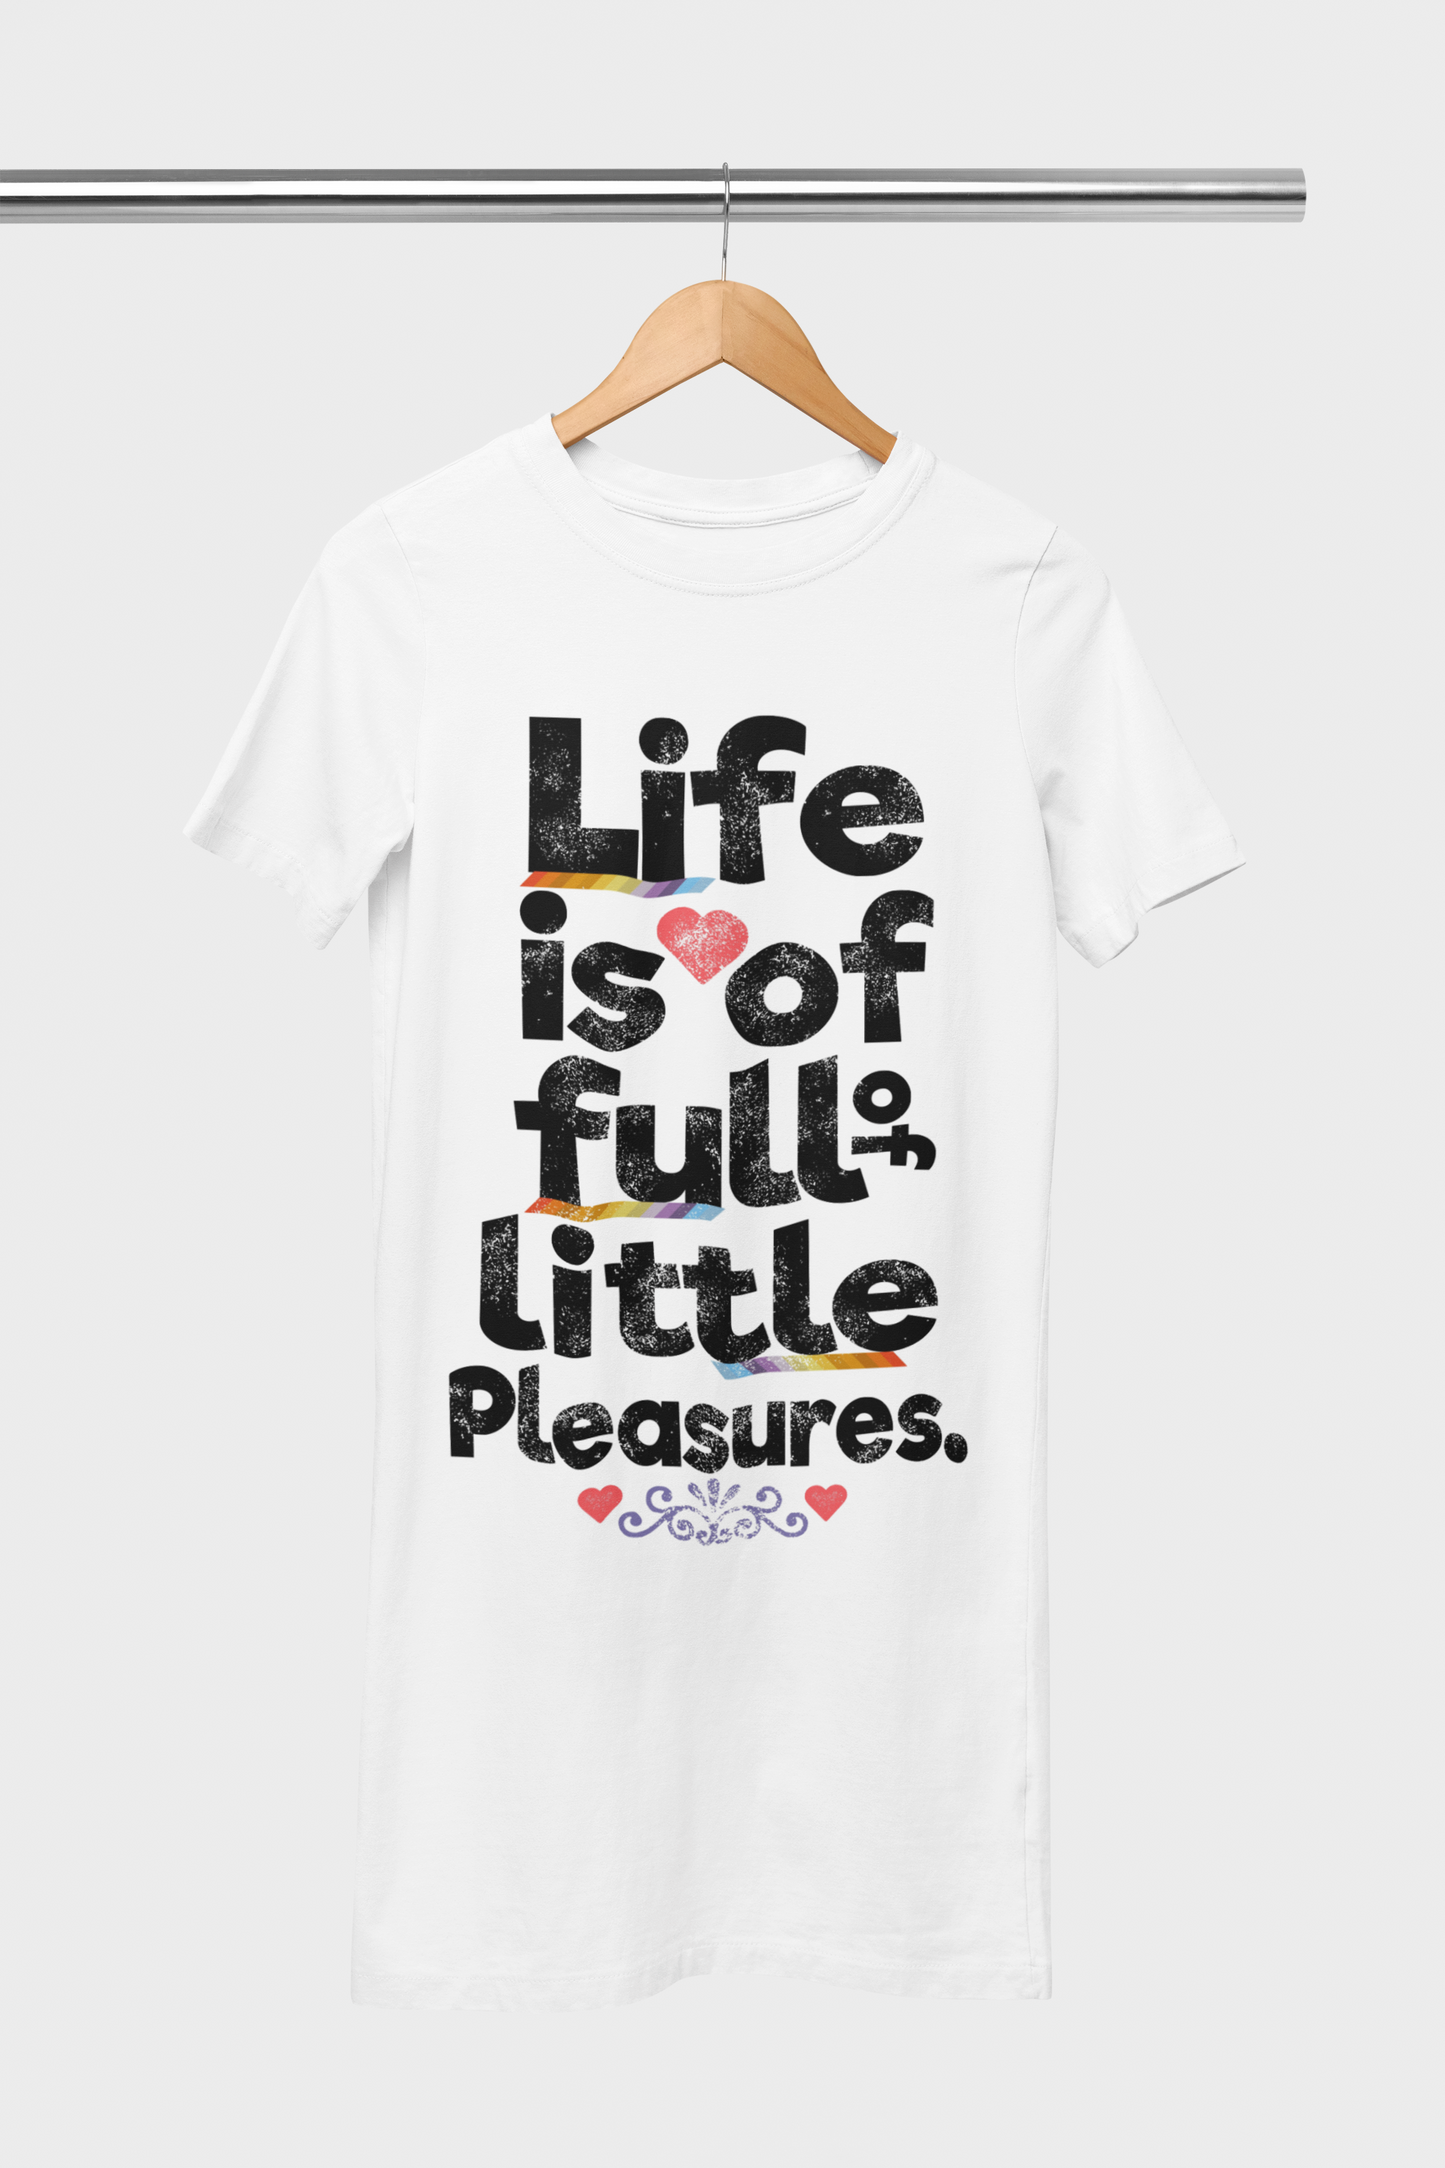 Life Is Full Of Little Pleasures White T-Shirt Dress For Women